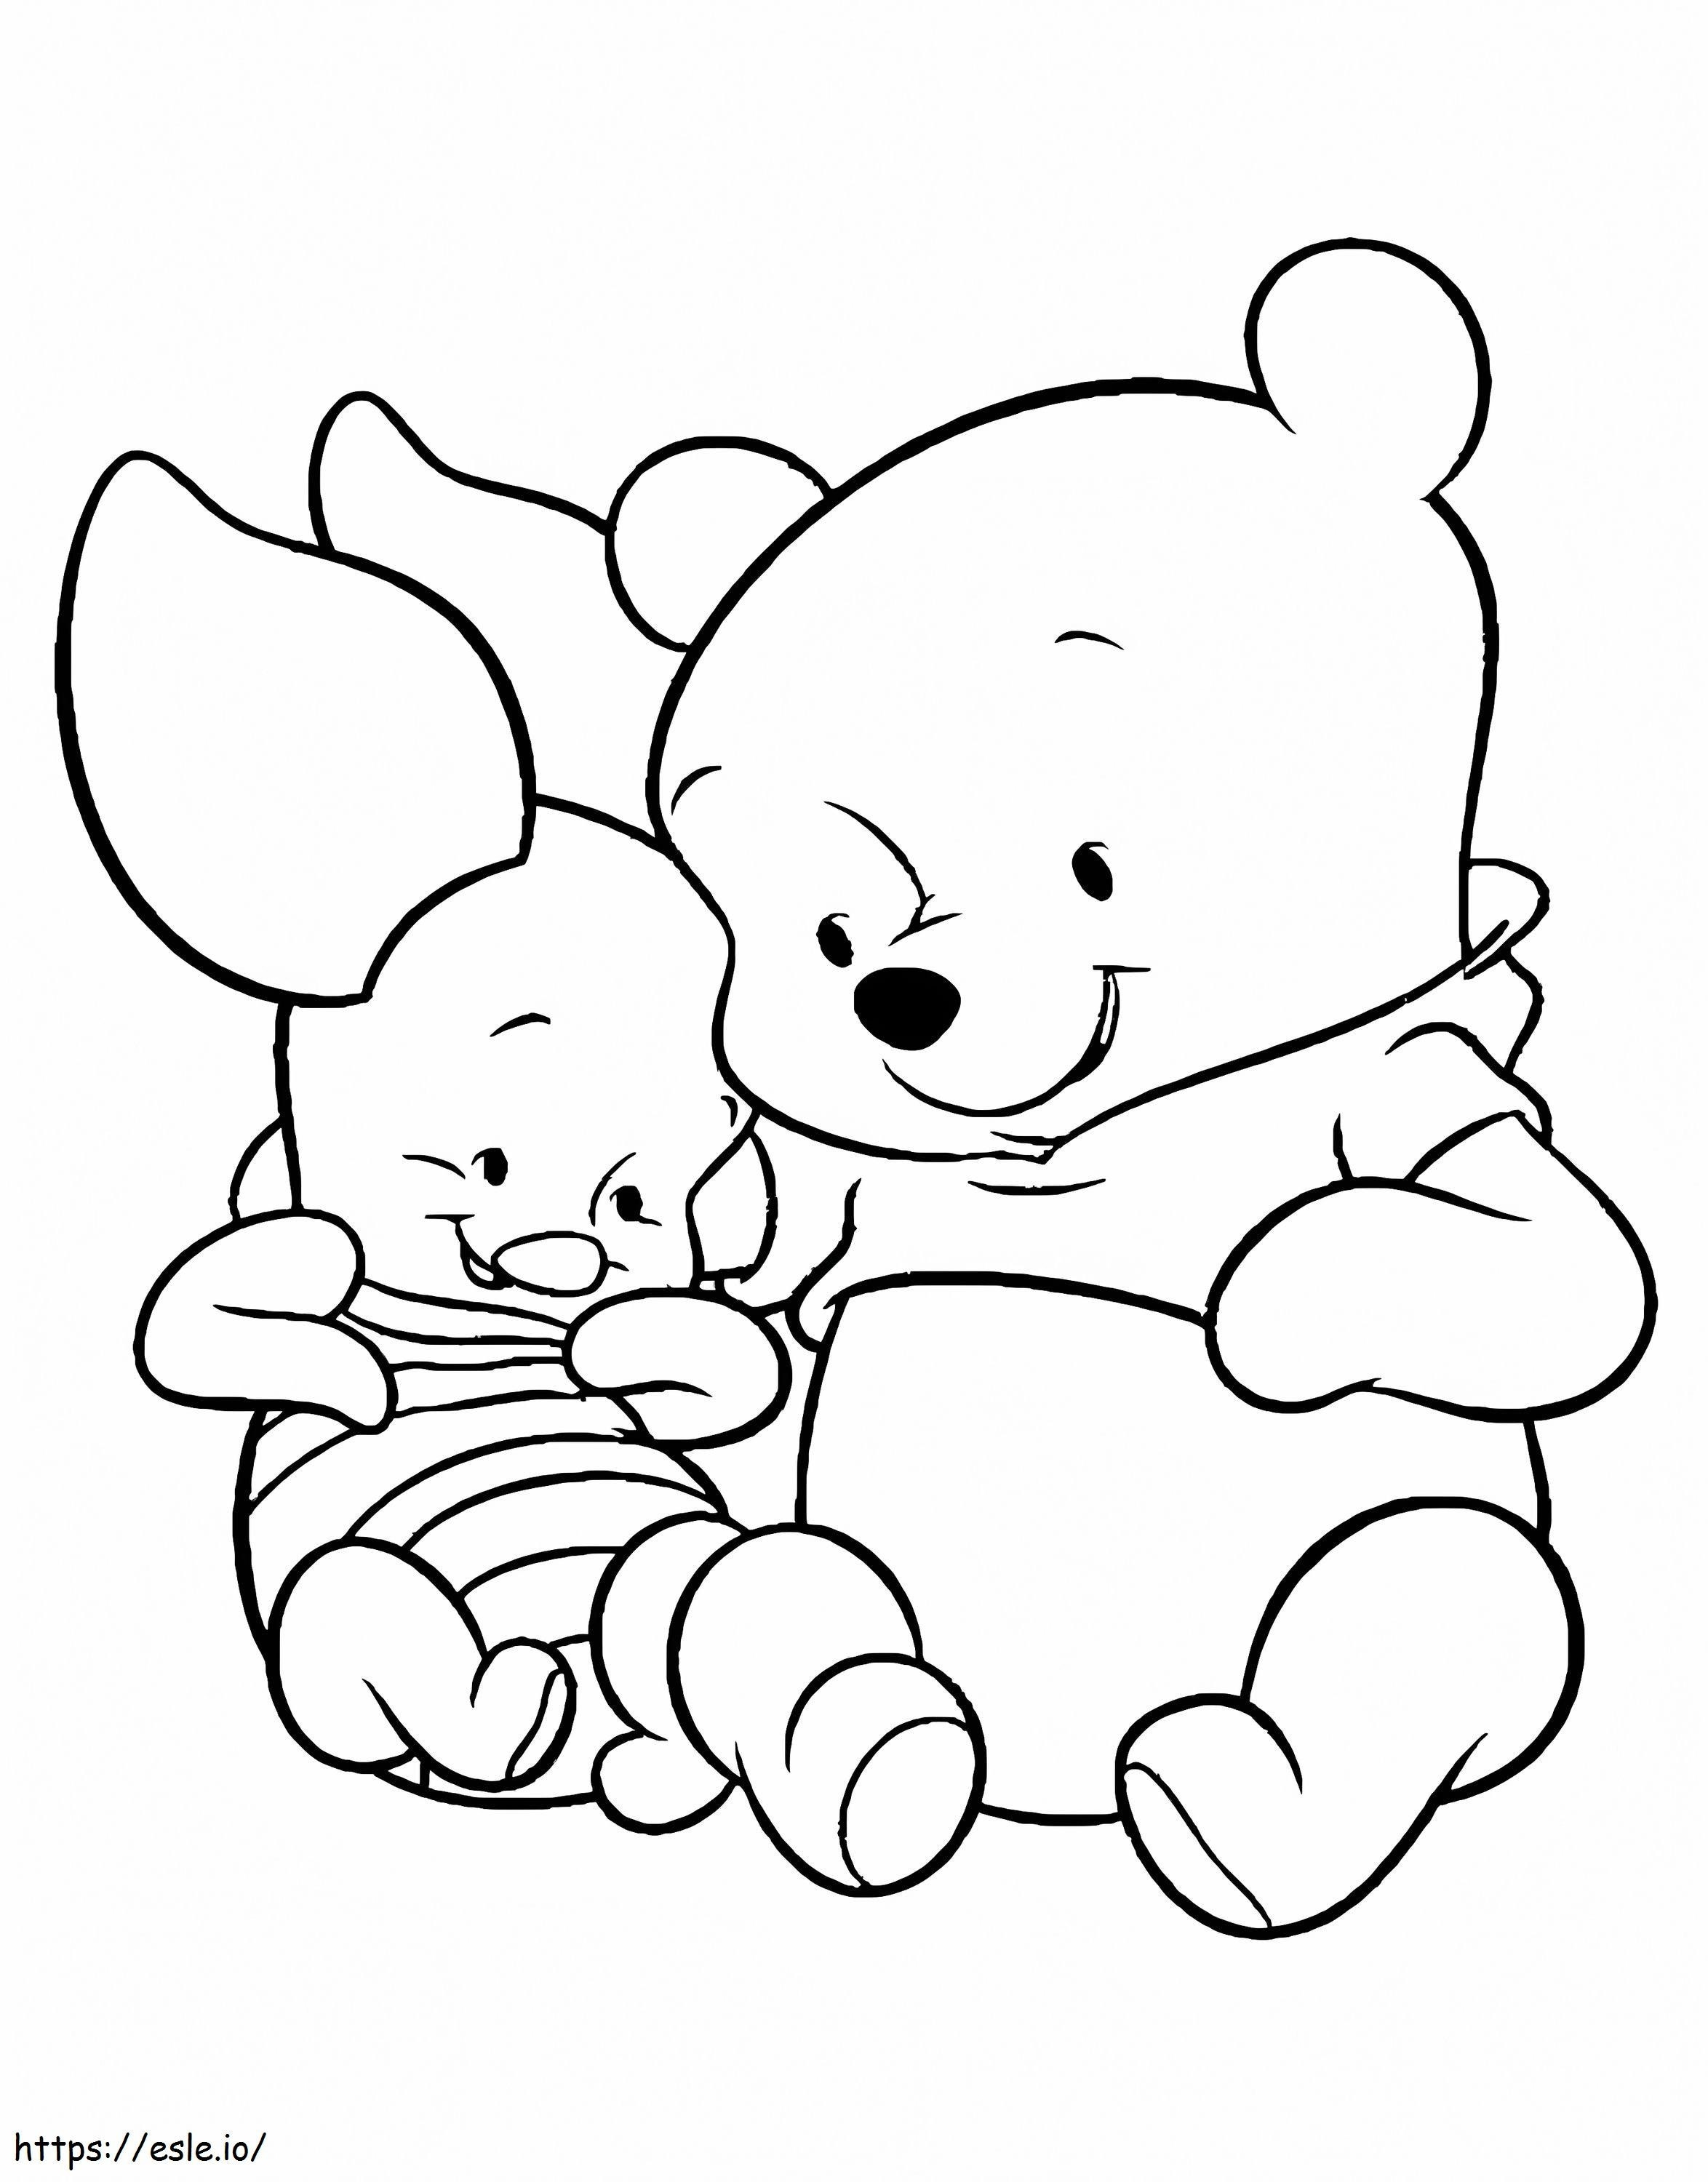 Bebe Urso Pooh e Leitão para colorir